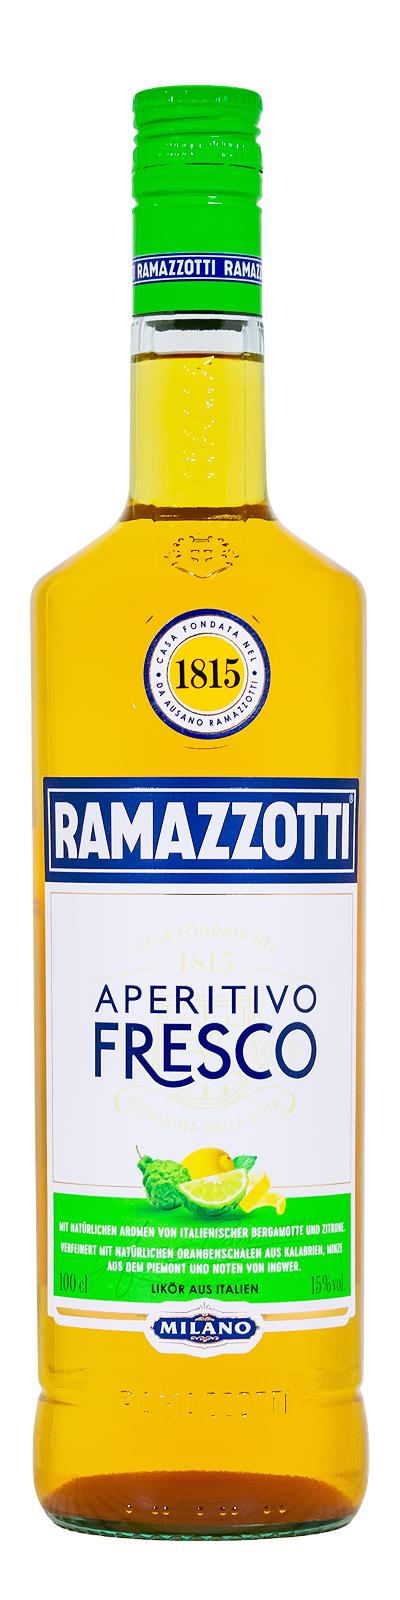 Ramazzotti Aperitivo Fresco - 1 Liter 15% vol